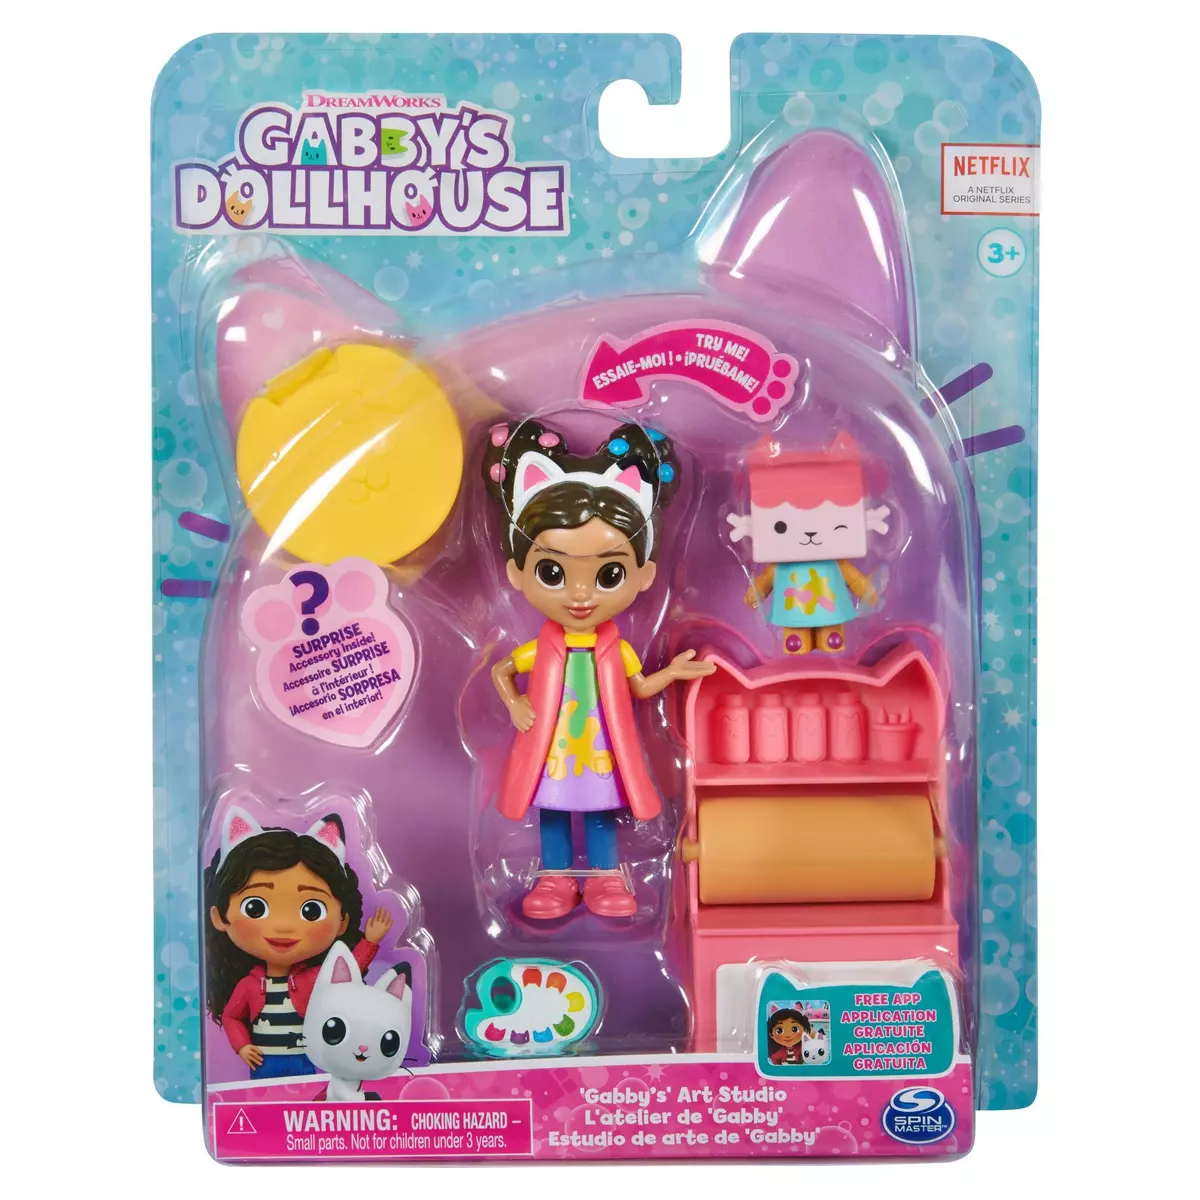 SPIN MASTER Figurine et véhicule GAbby's Dollhouse - Le pique de Carlita et  Pandy Paws pas cher 